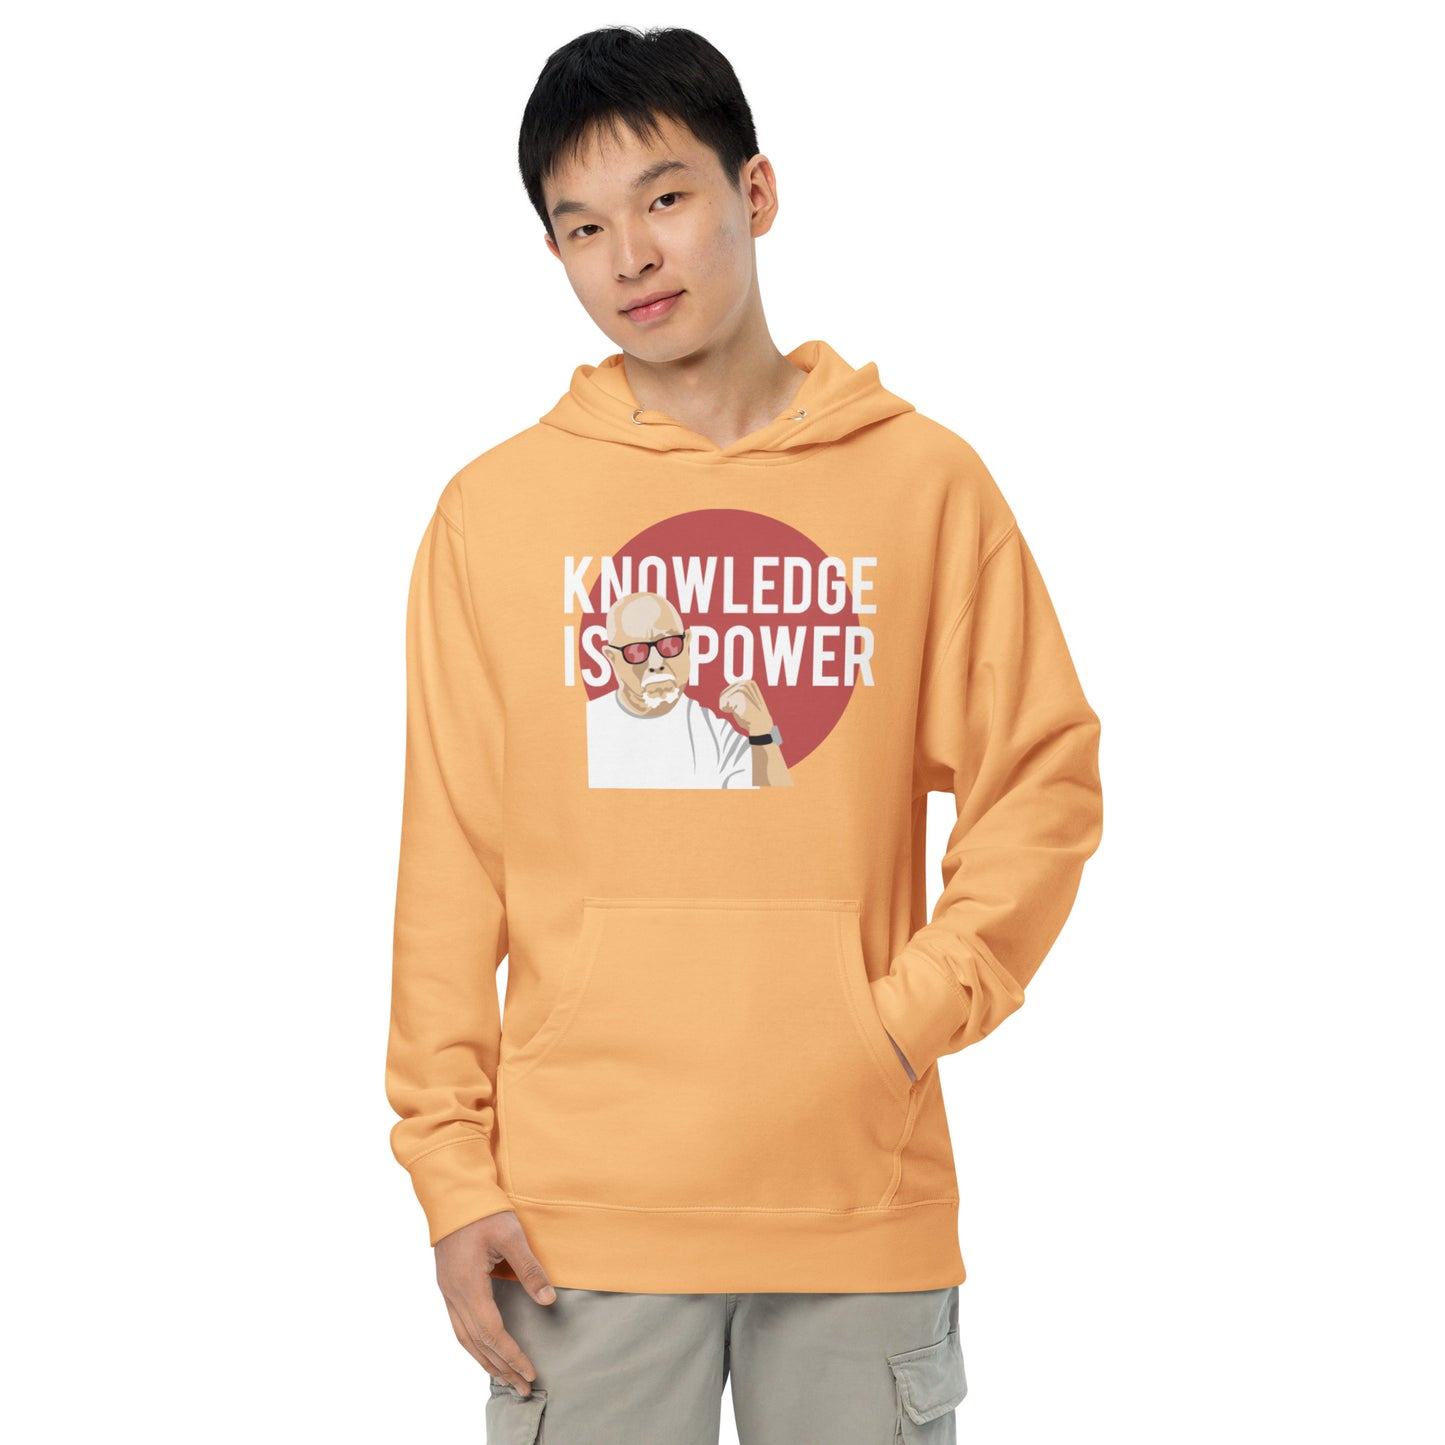 Knowledge is power hoodie - light